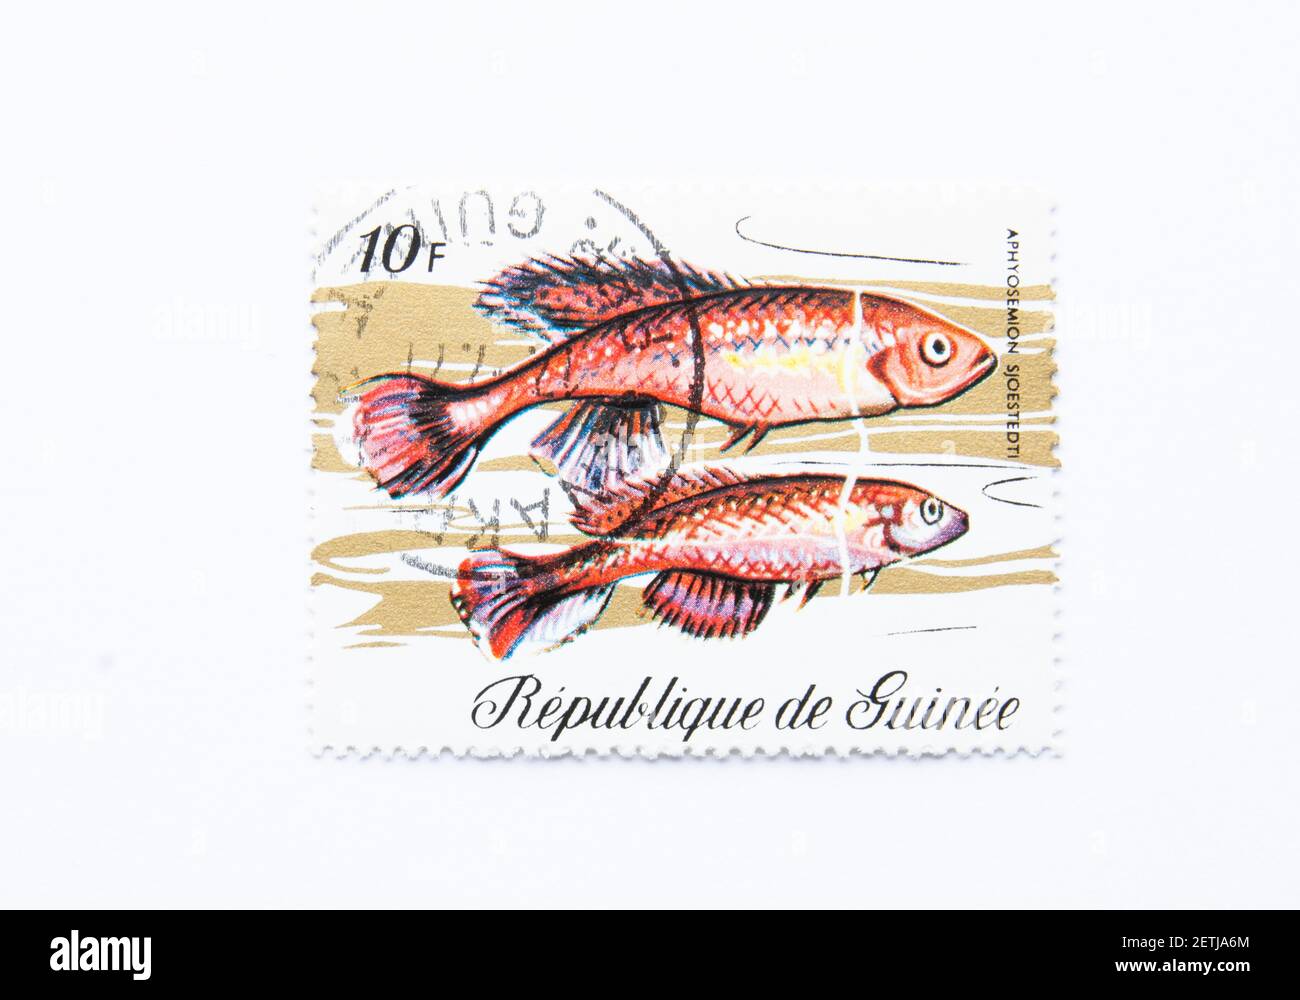 01.03.2021 Istanbul Turkey. Guinea Republic Postage Stamp. circa 1971. aphyosemion sjoestedti. Stock Photo